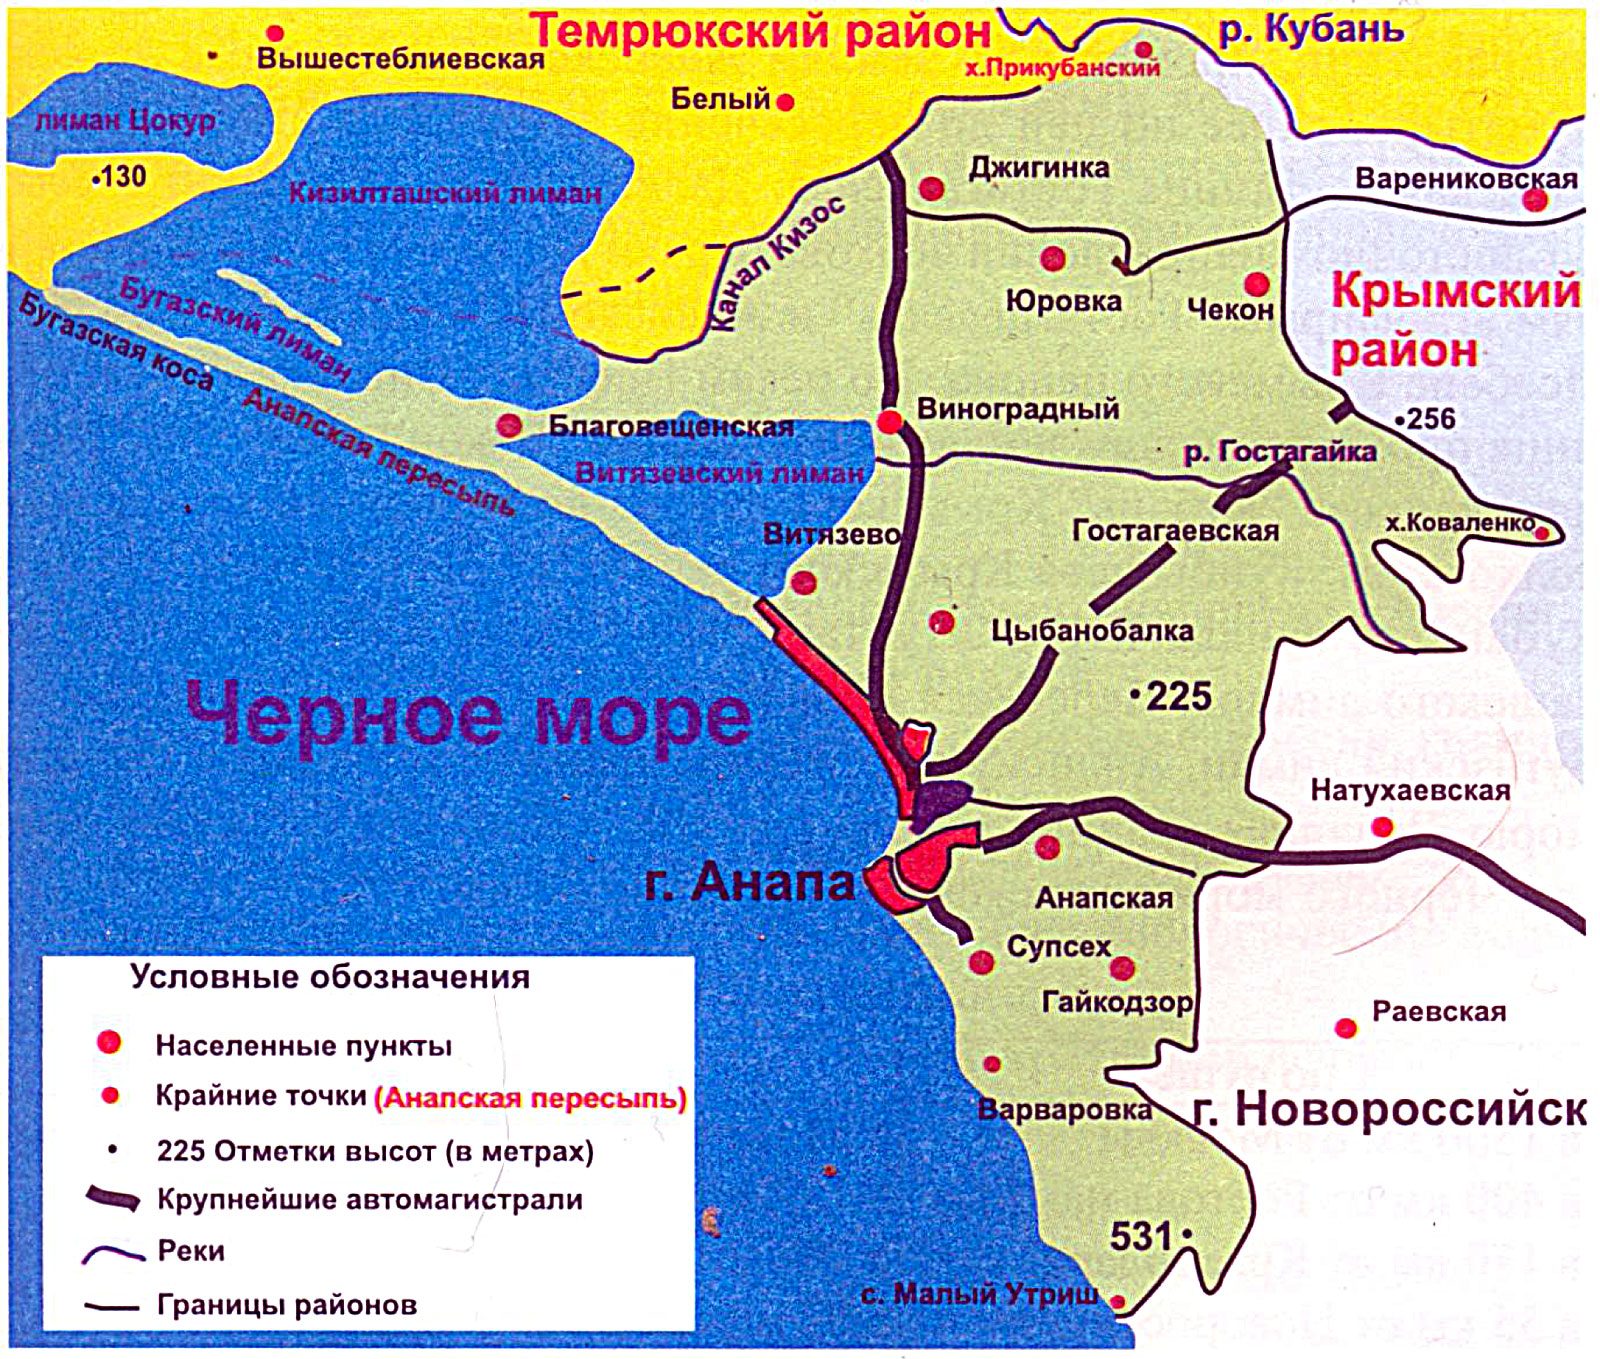 Анапский район на карте Краснодарского края